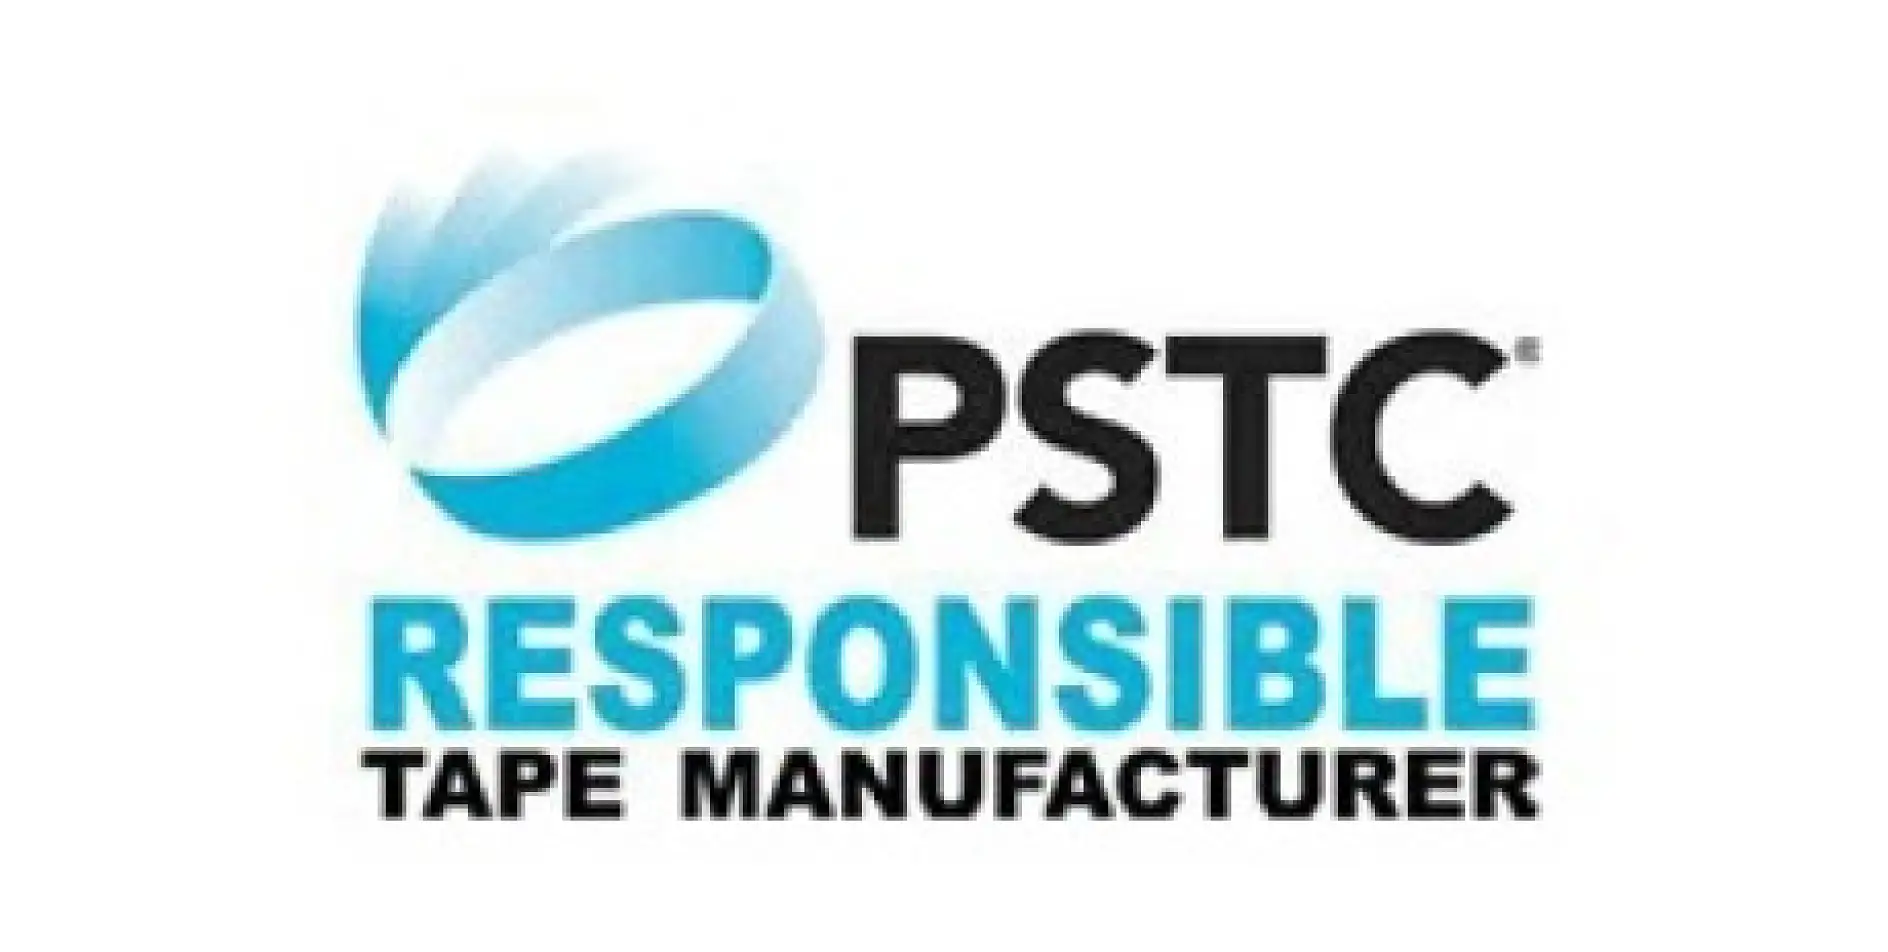 Pressure Sensitive Tape Council (PSTC) är ett ideellt, 60 år gammalt nordamerikanskt handelsförbund för tejptillverkare och anslutna leverantörer, som hjälper branschen att tillverka tryckkänsliga tejpprodukter av hög kvalitet på den globala marknadsplatsen.